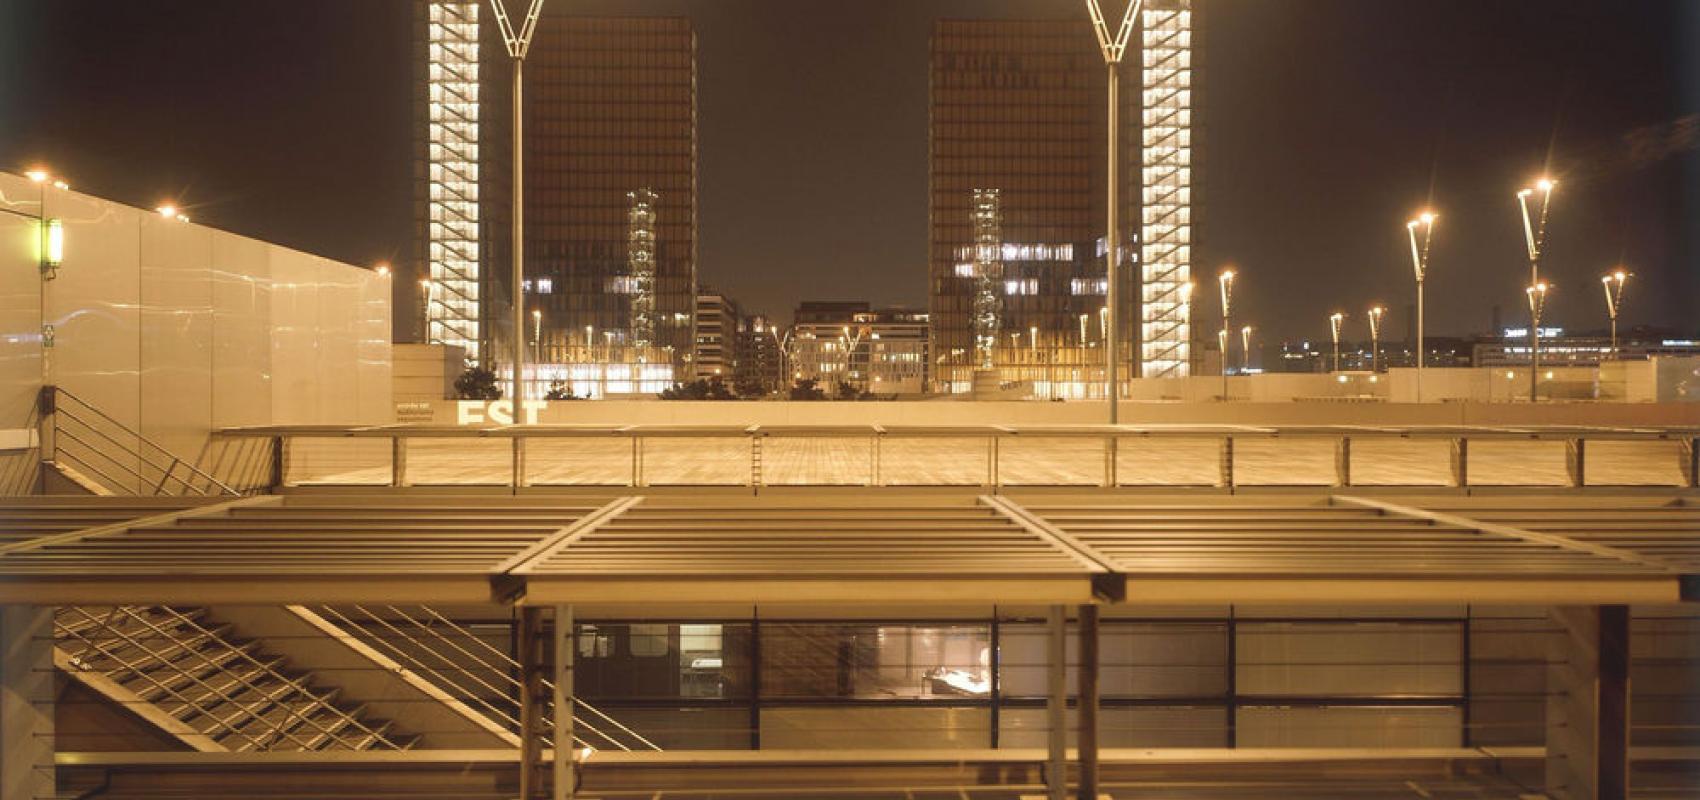 Esplanade du site François-Mitterrand de nuit -  - BnF